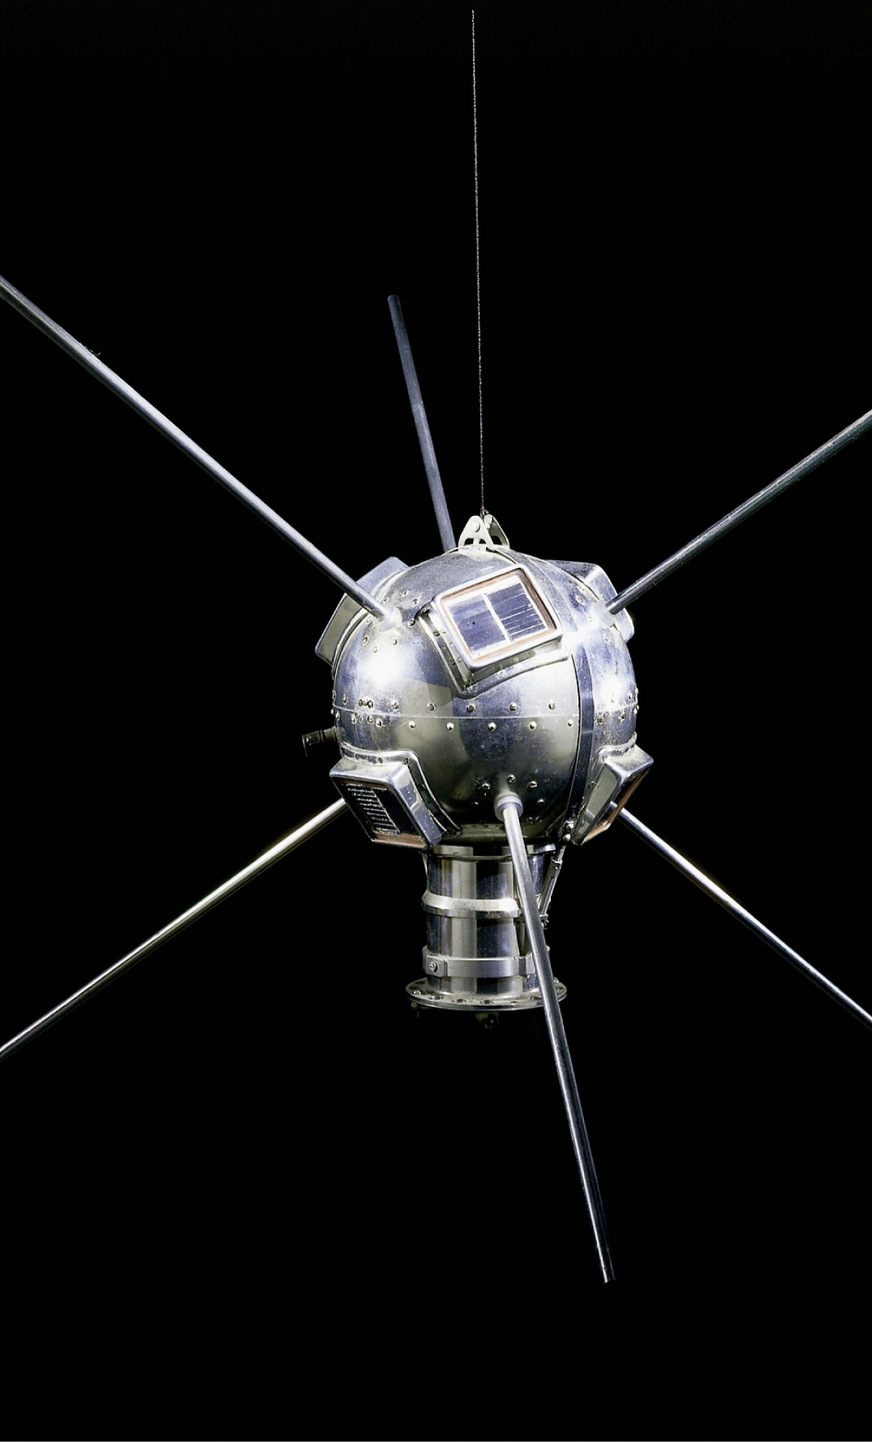 Der Satellit Vanguard 1 wurde 1958 mit Solarzellen ausgestattet.